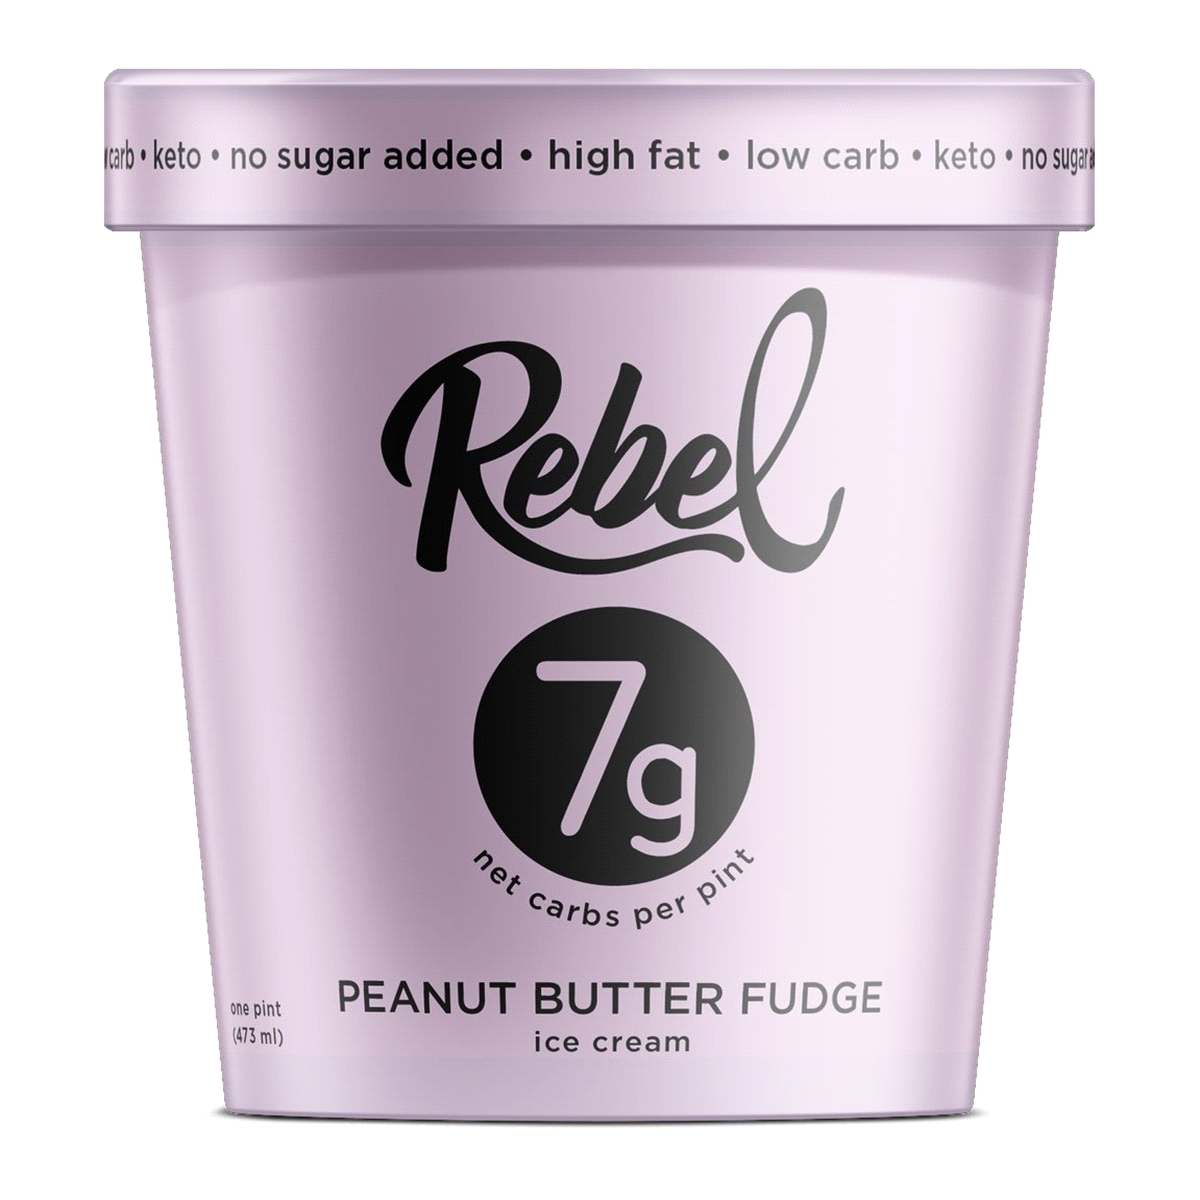 Rebel Ice Cream : Peanut Butter Fudge